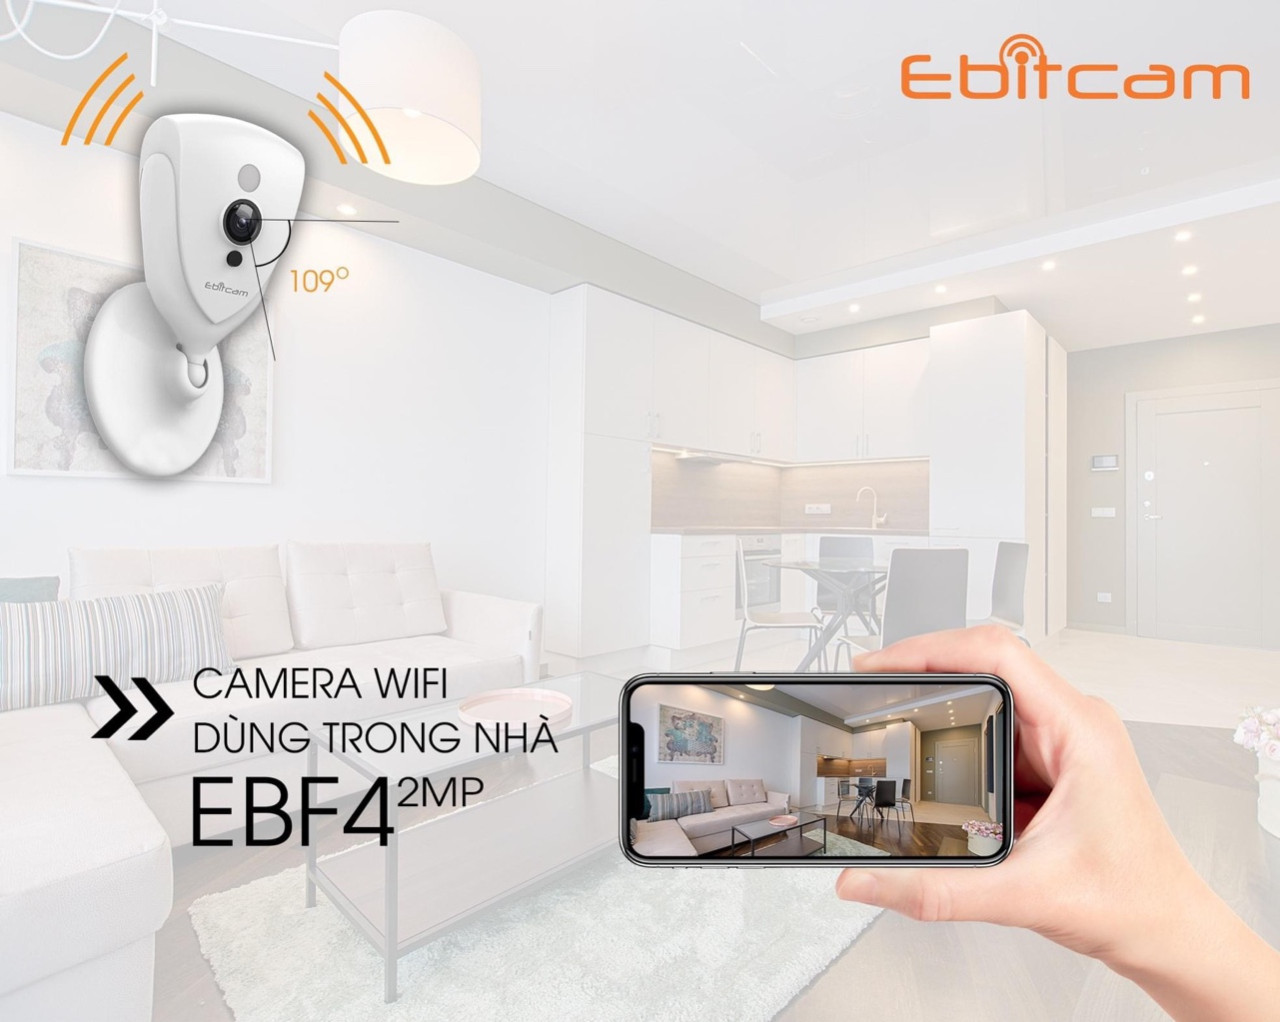 Camera Ip Wifi Ebitcam EBF4 2.0MPx Full HD 1080P + Thẻ Nhớ 32GB - Hàng Chính Hãng